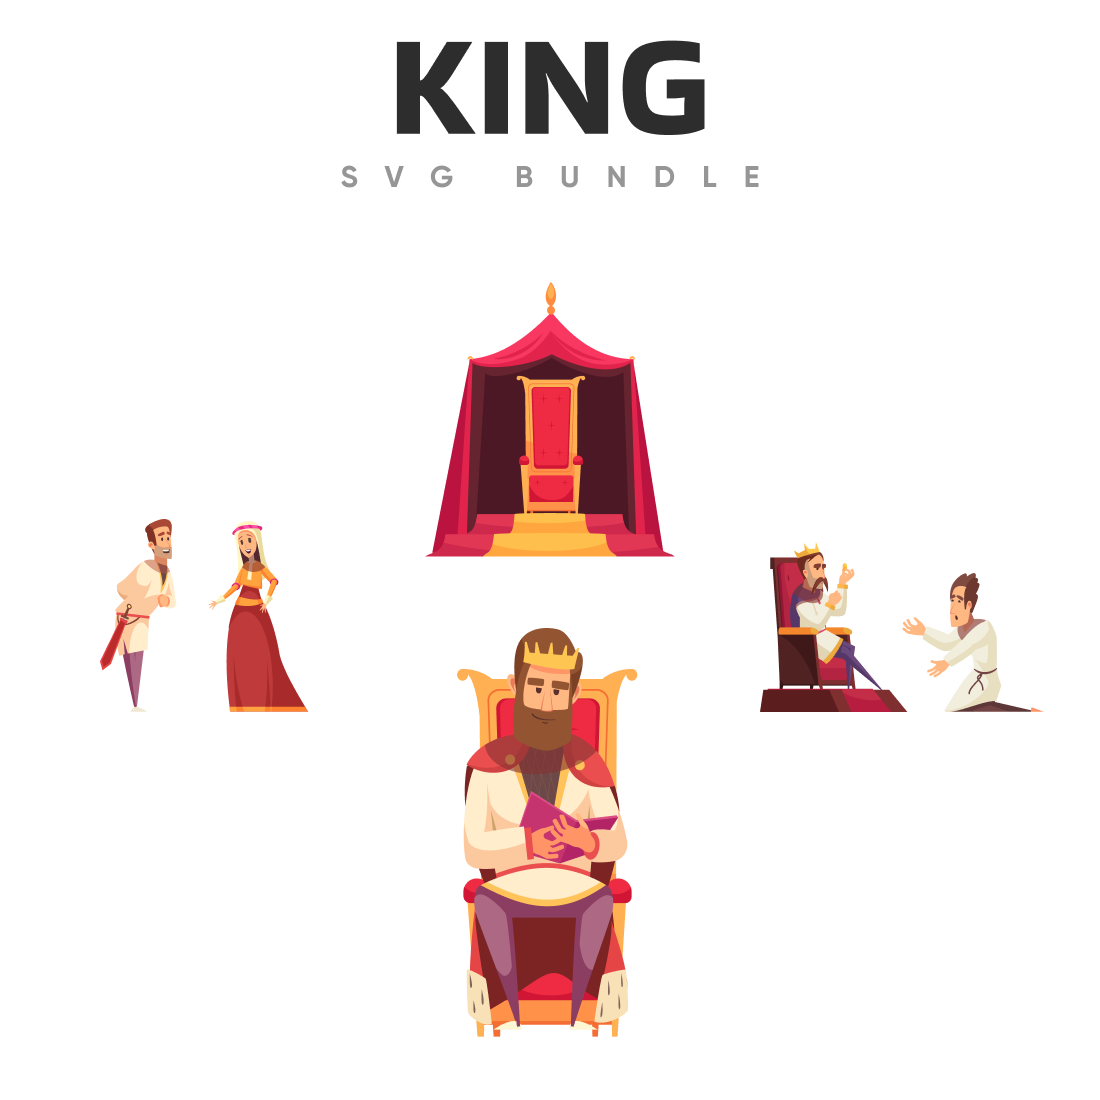 King svg bundle.